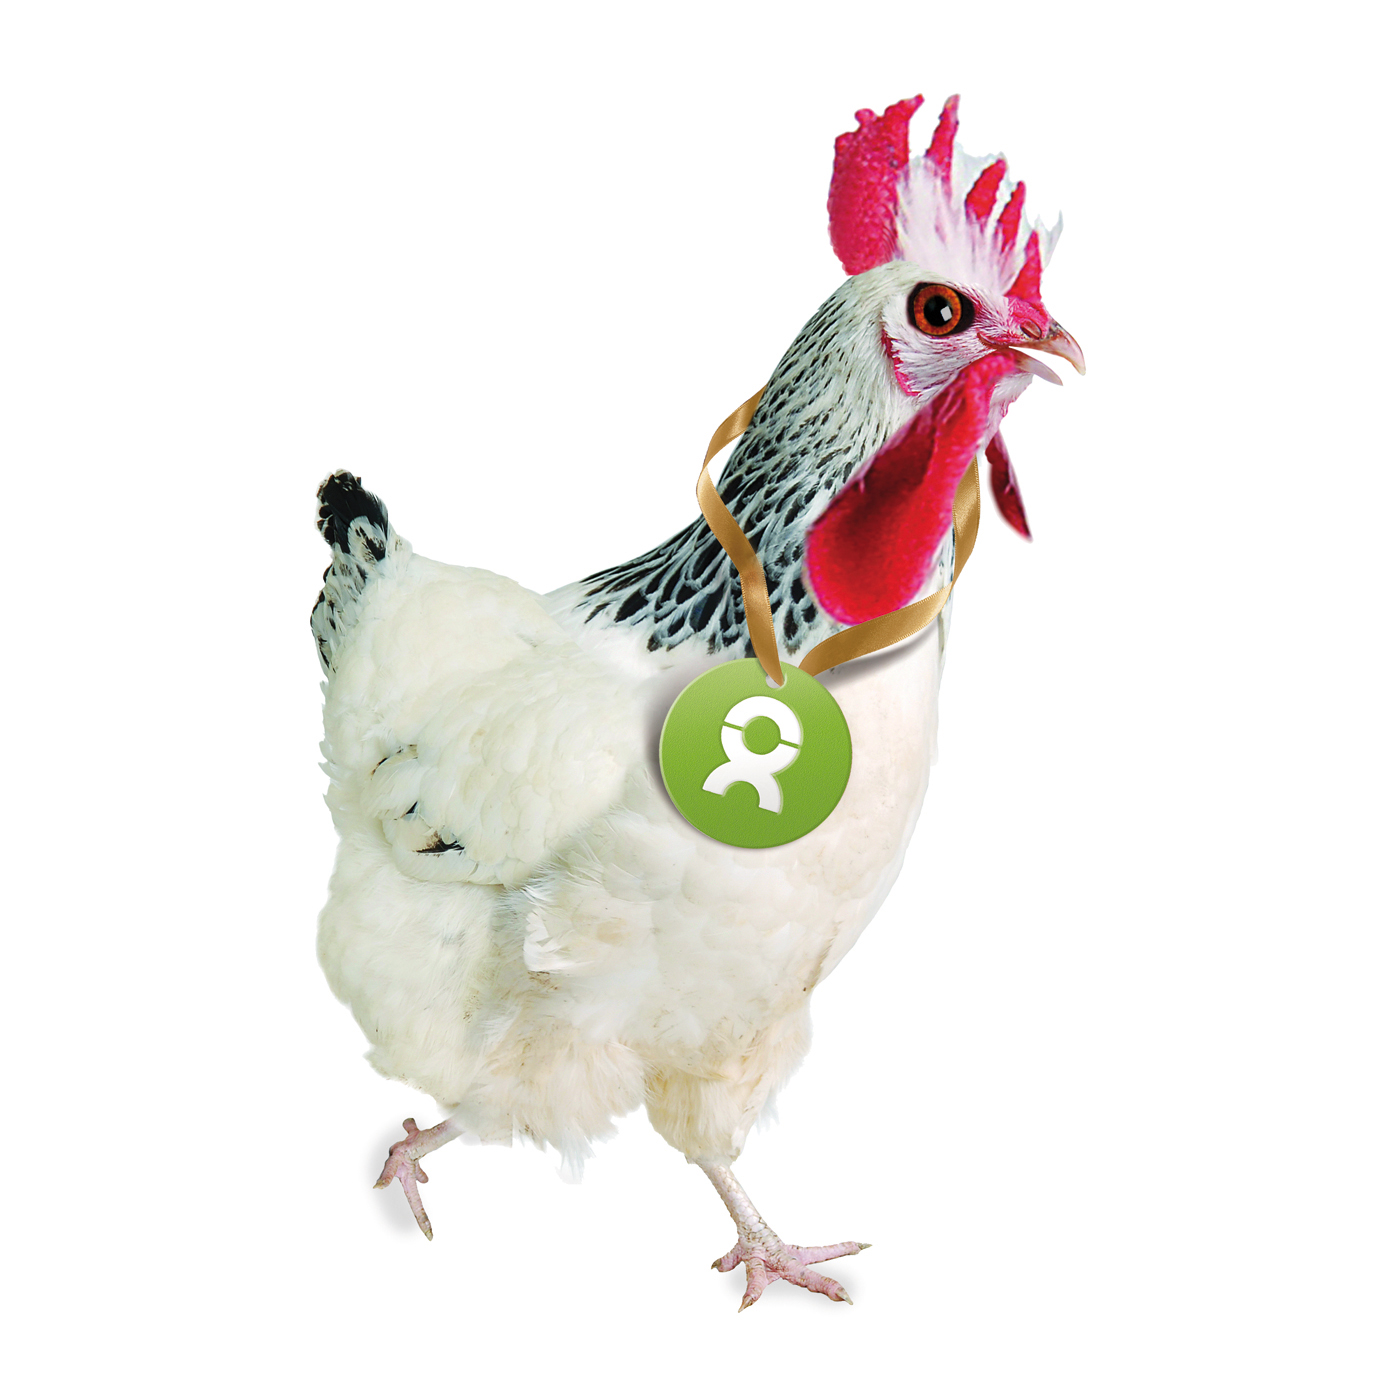 Beispiel Geschenk Spende: Grafik von einem weiß gefiederten Huhn, das das Oxfam-Symbol um den Hals trägt